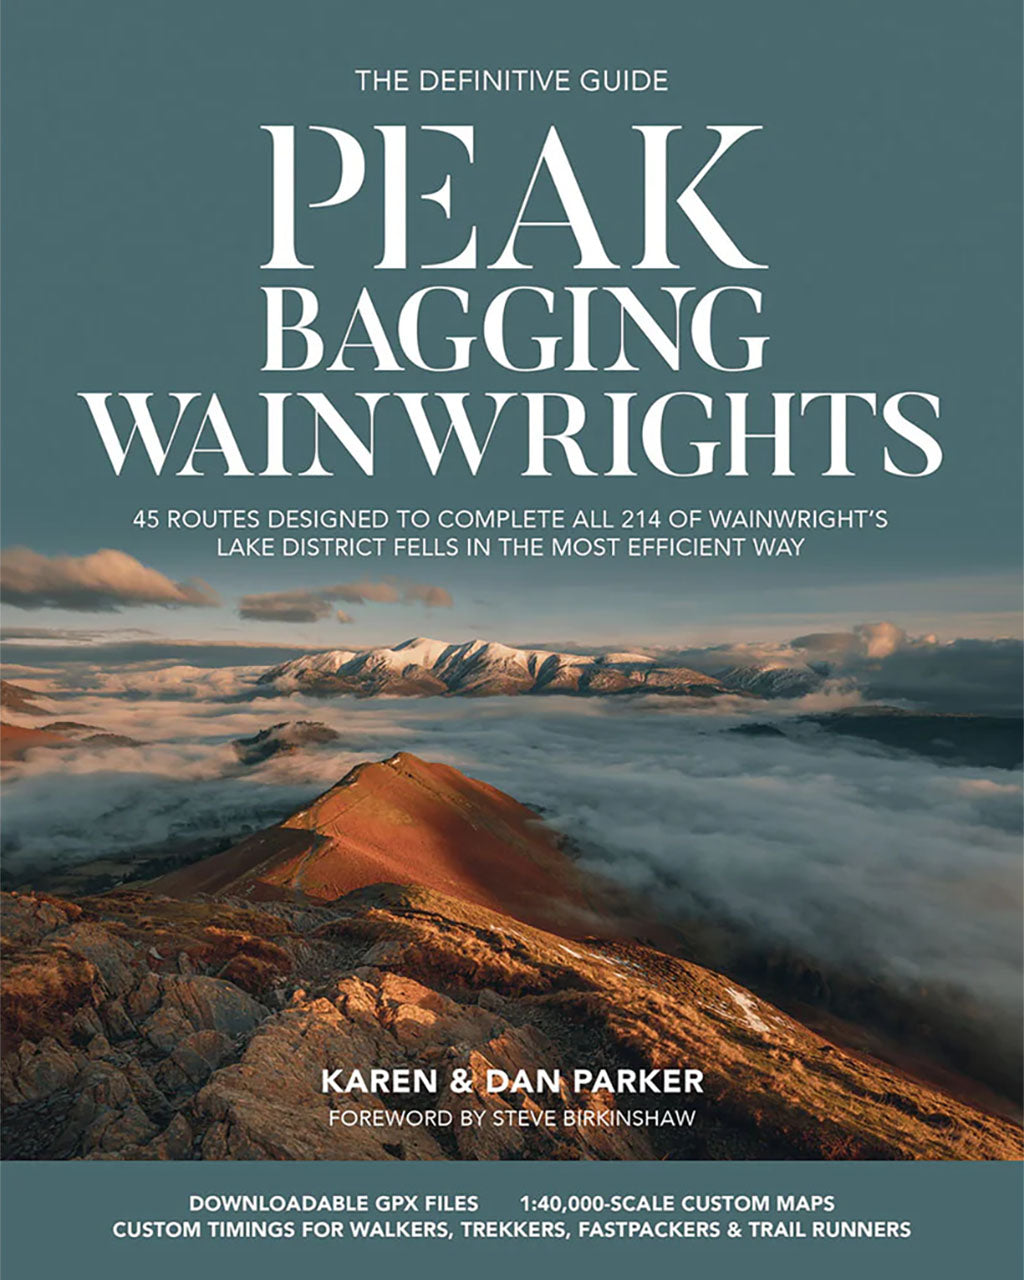 Peak Bagging Wainwrights by Karen & Dan Parker